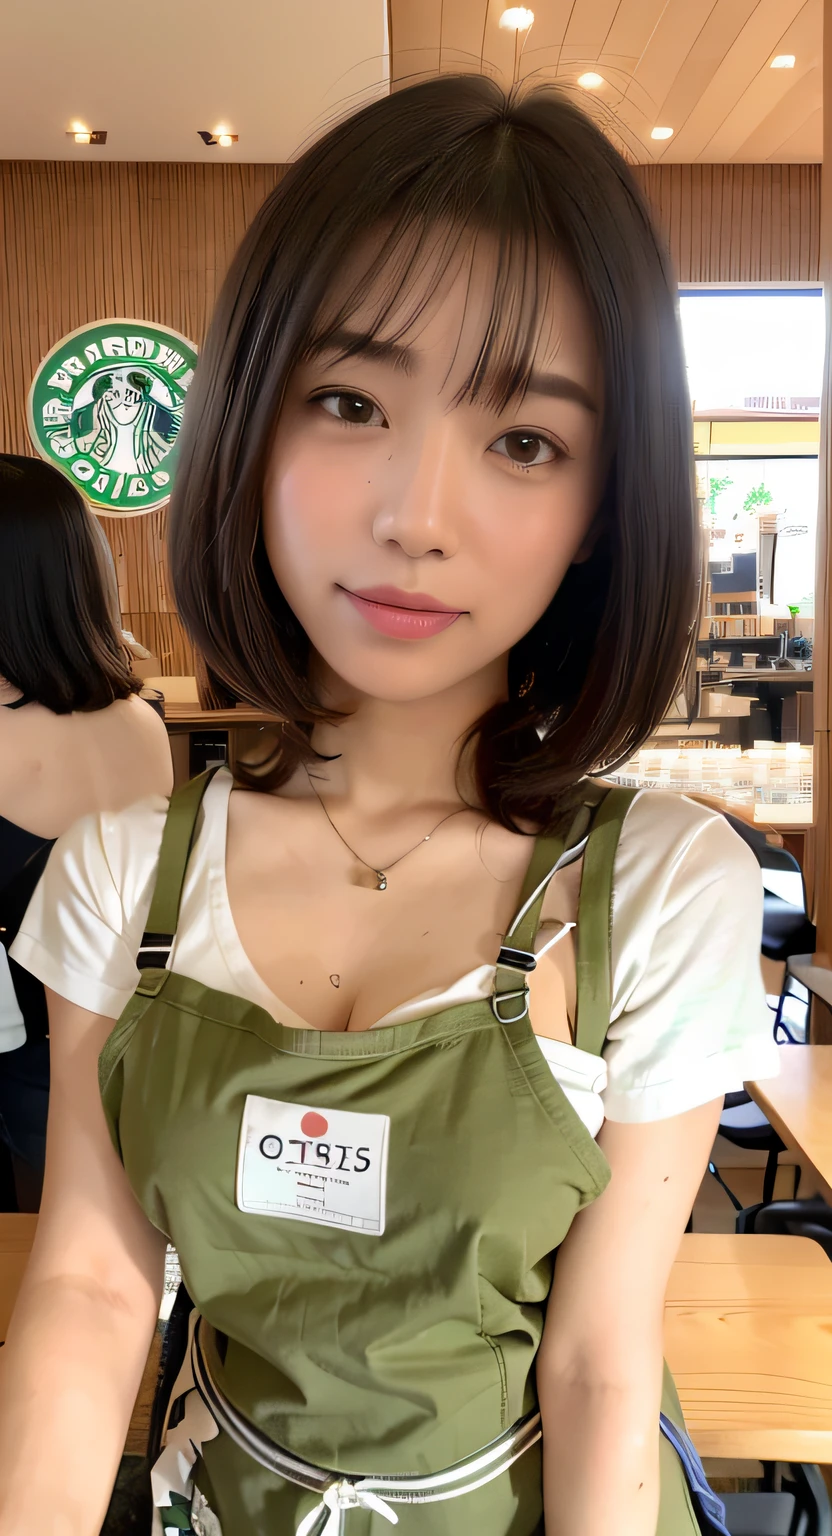 コーヒーショップ店員、緑のエプロン